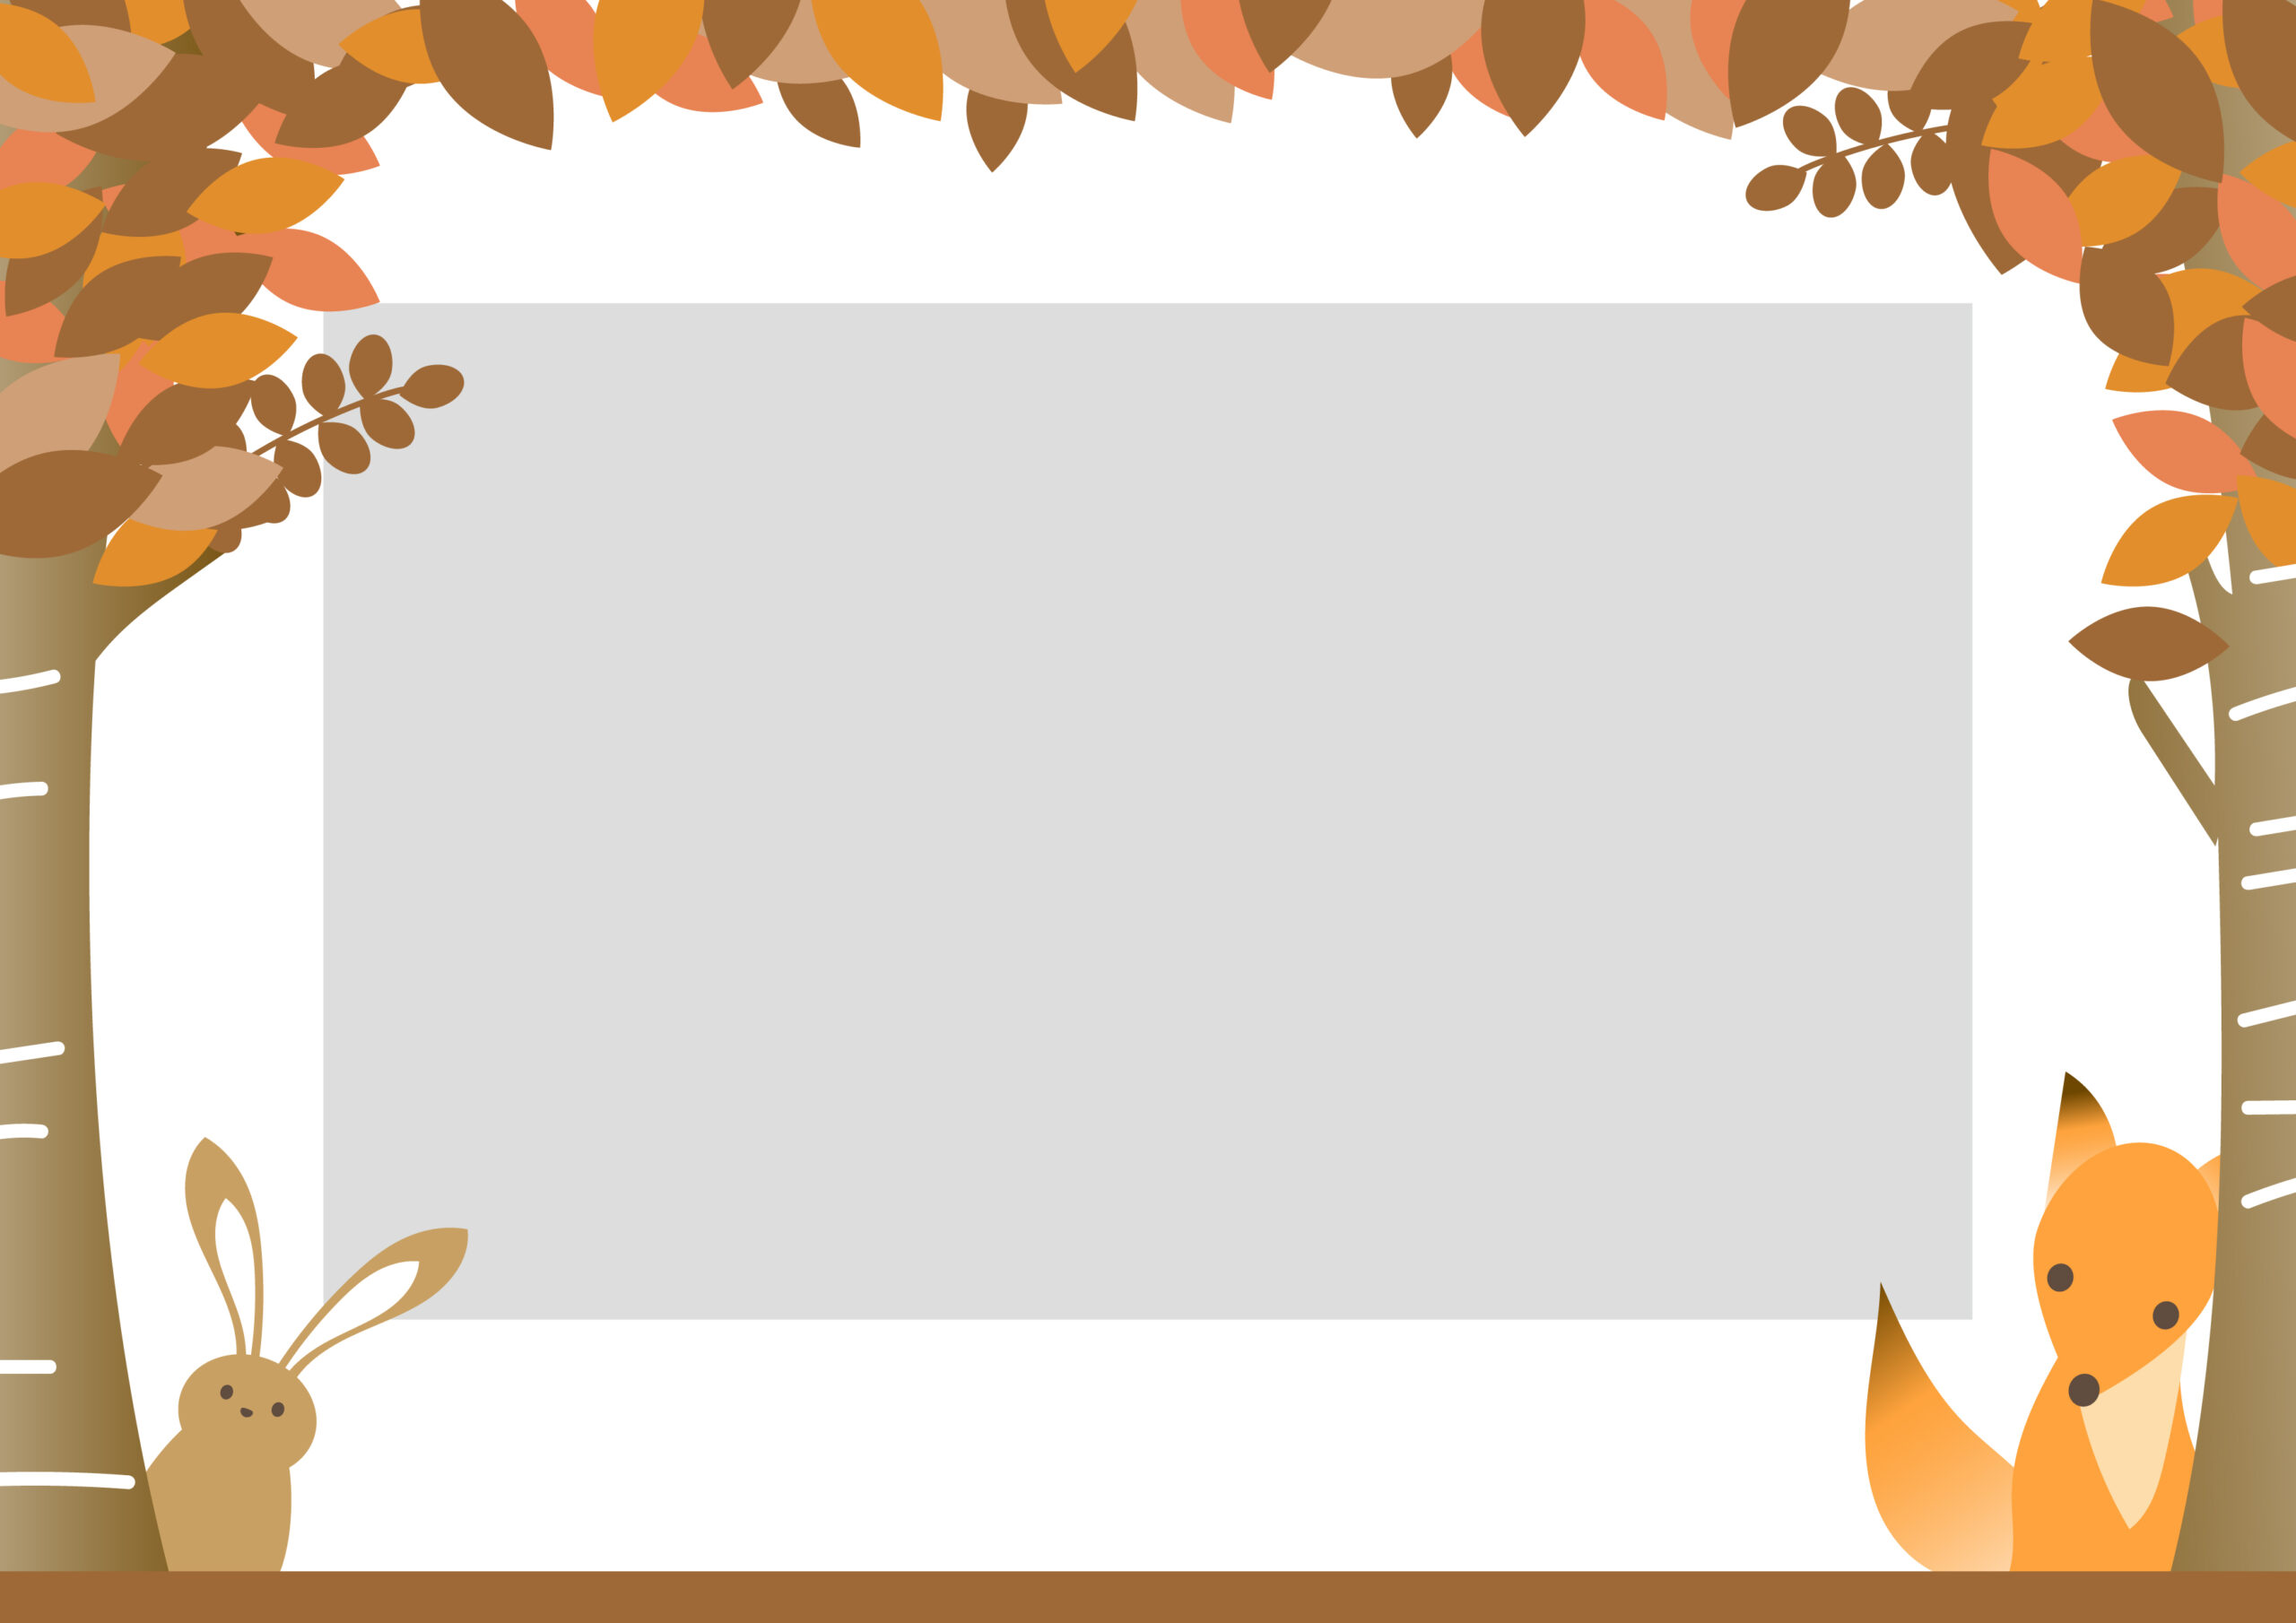 季節を感じるかわいいフレーム素材！秋の森の背景とキツネとウサギのイラストデザインで、9月や10月、11月に開催する音楽会などのイベント告知ポスターや張り紙などの作成におすすめの飾り枠となっております。ダウンロード：JPGA4サイ